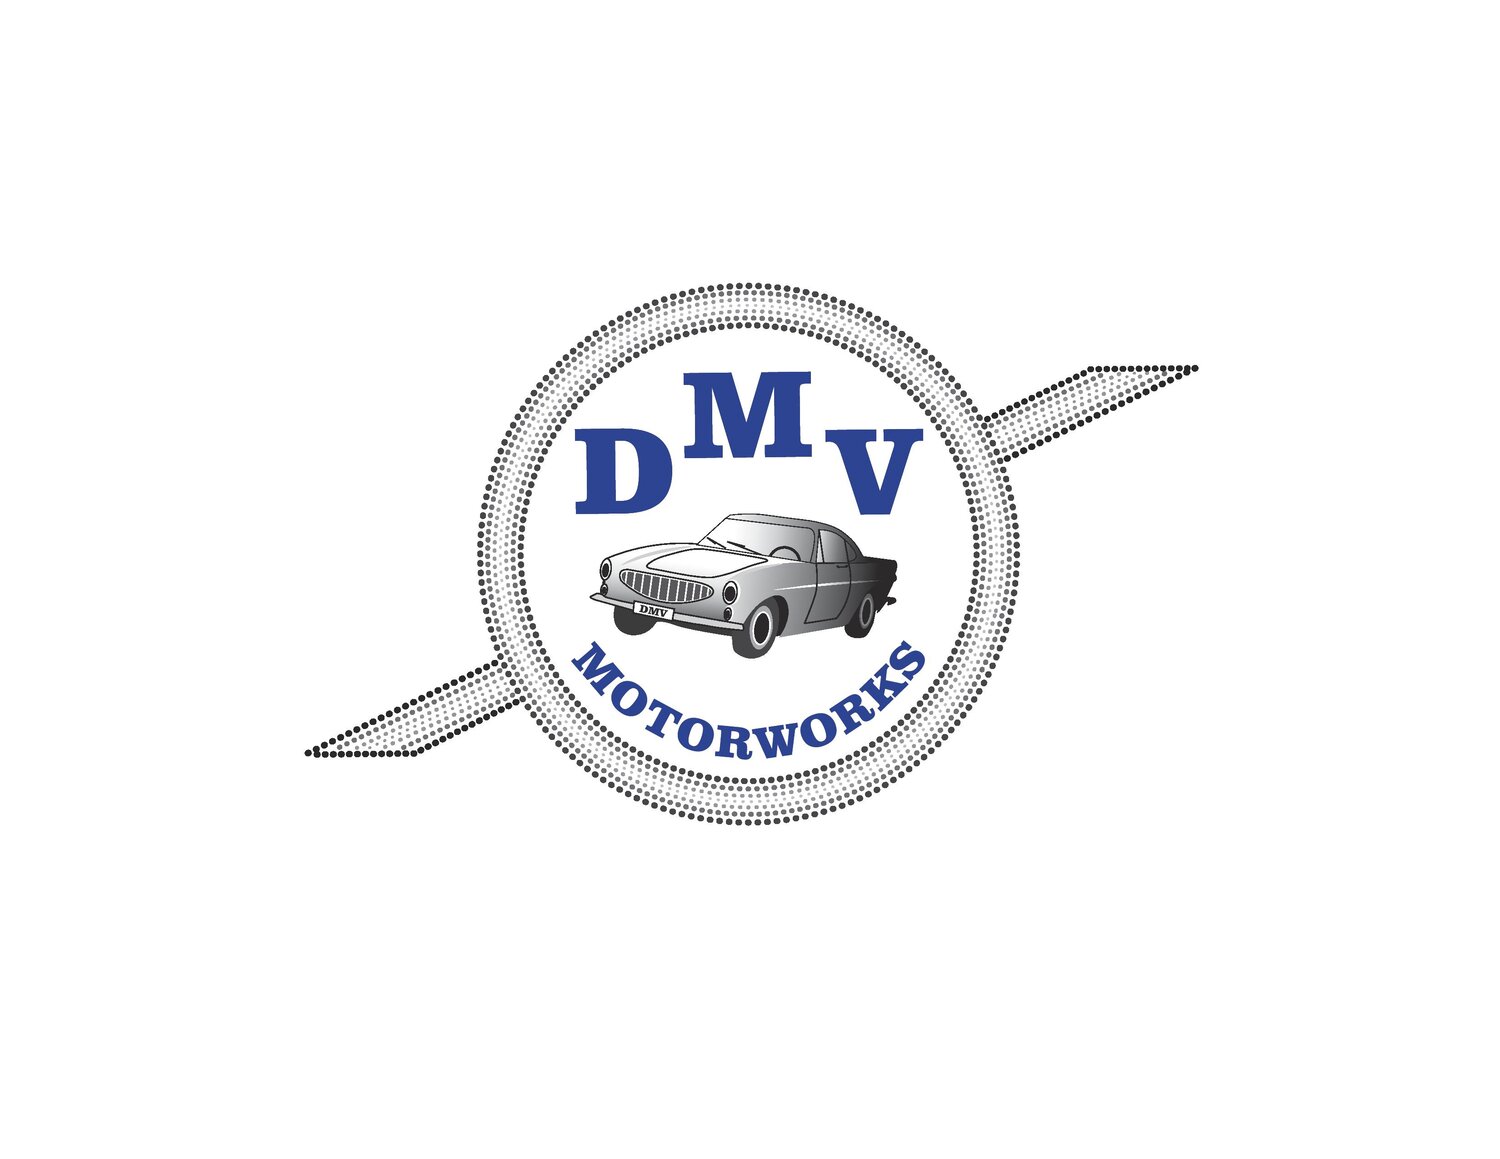 DMV Motorworks